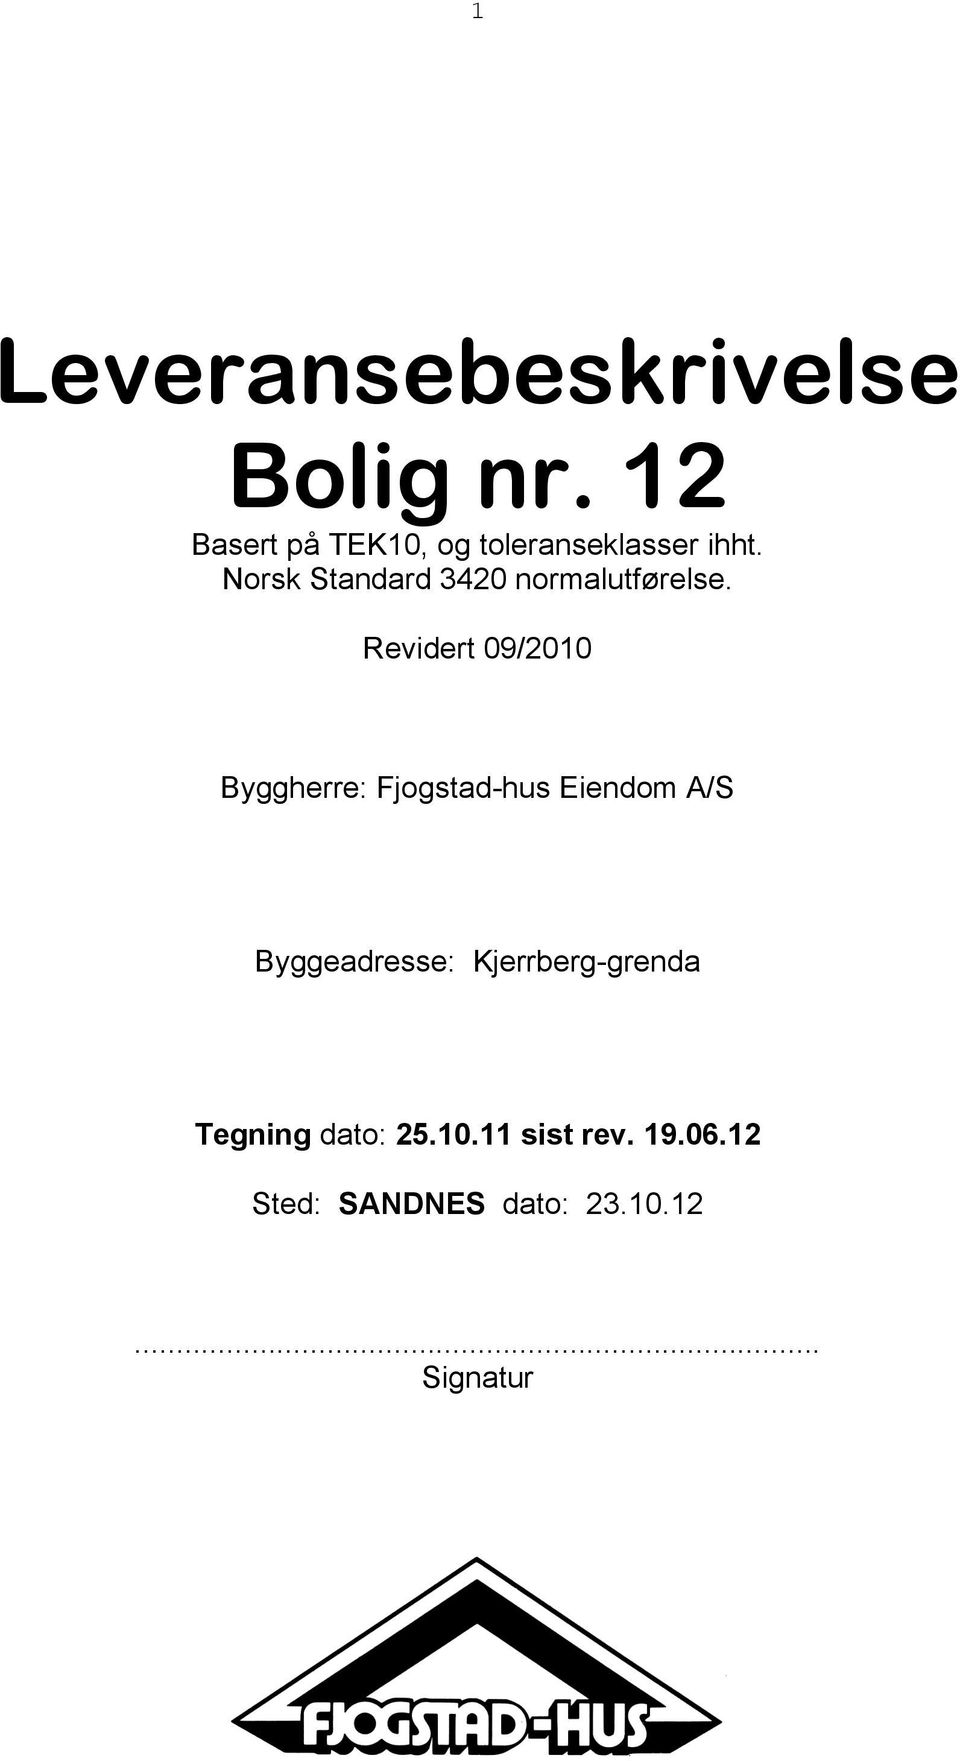 Norsk Standard 342 normalutførelse.